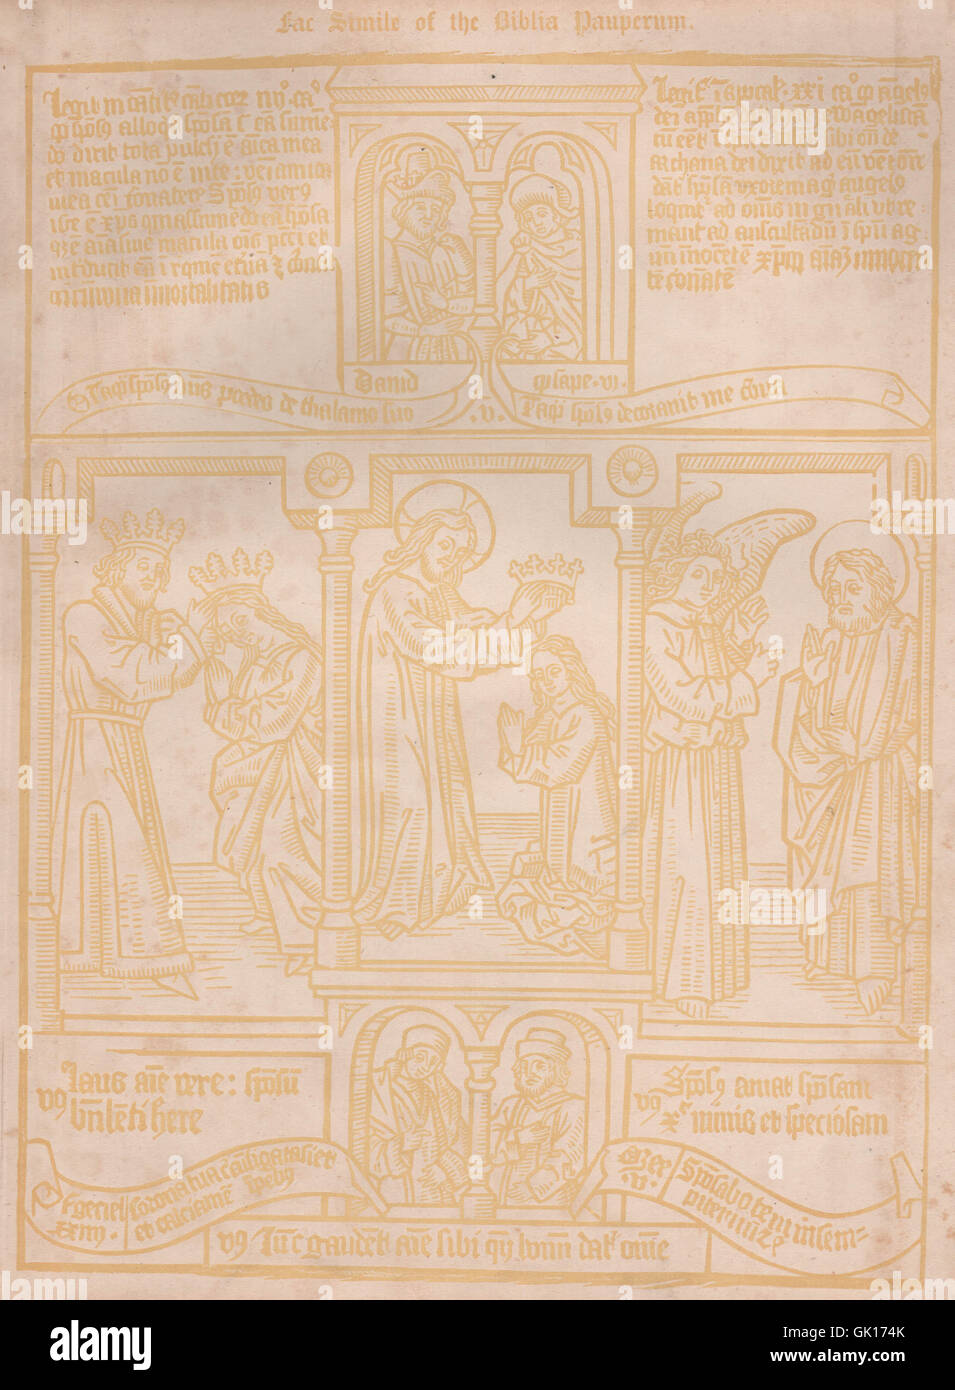 Fac Simile de la Biblia pauperum. Colophons babylonien brique, 1860 Caxton Banque D'Images